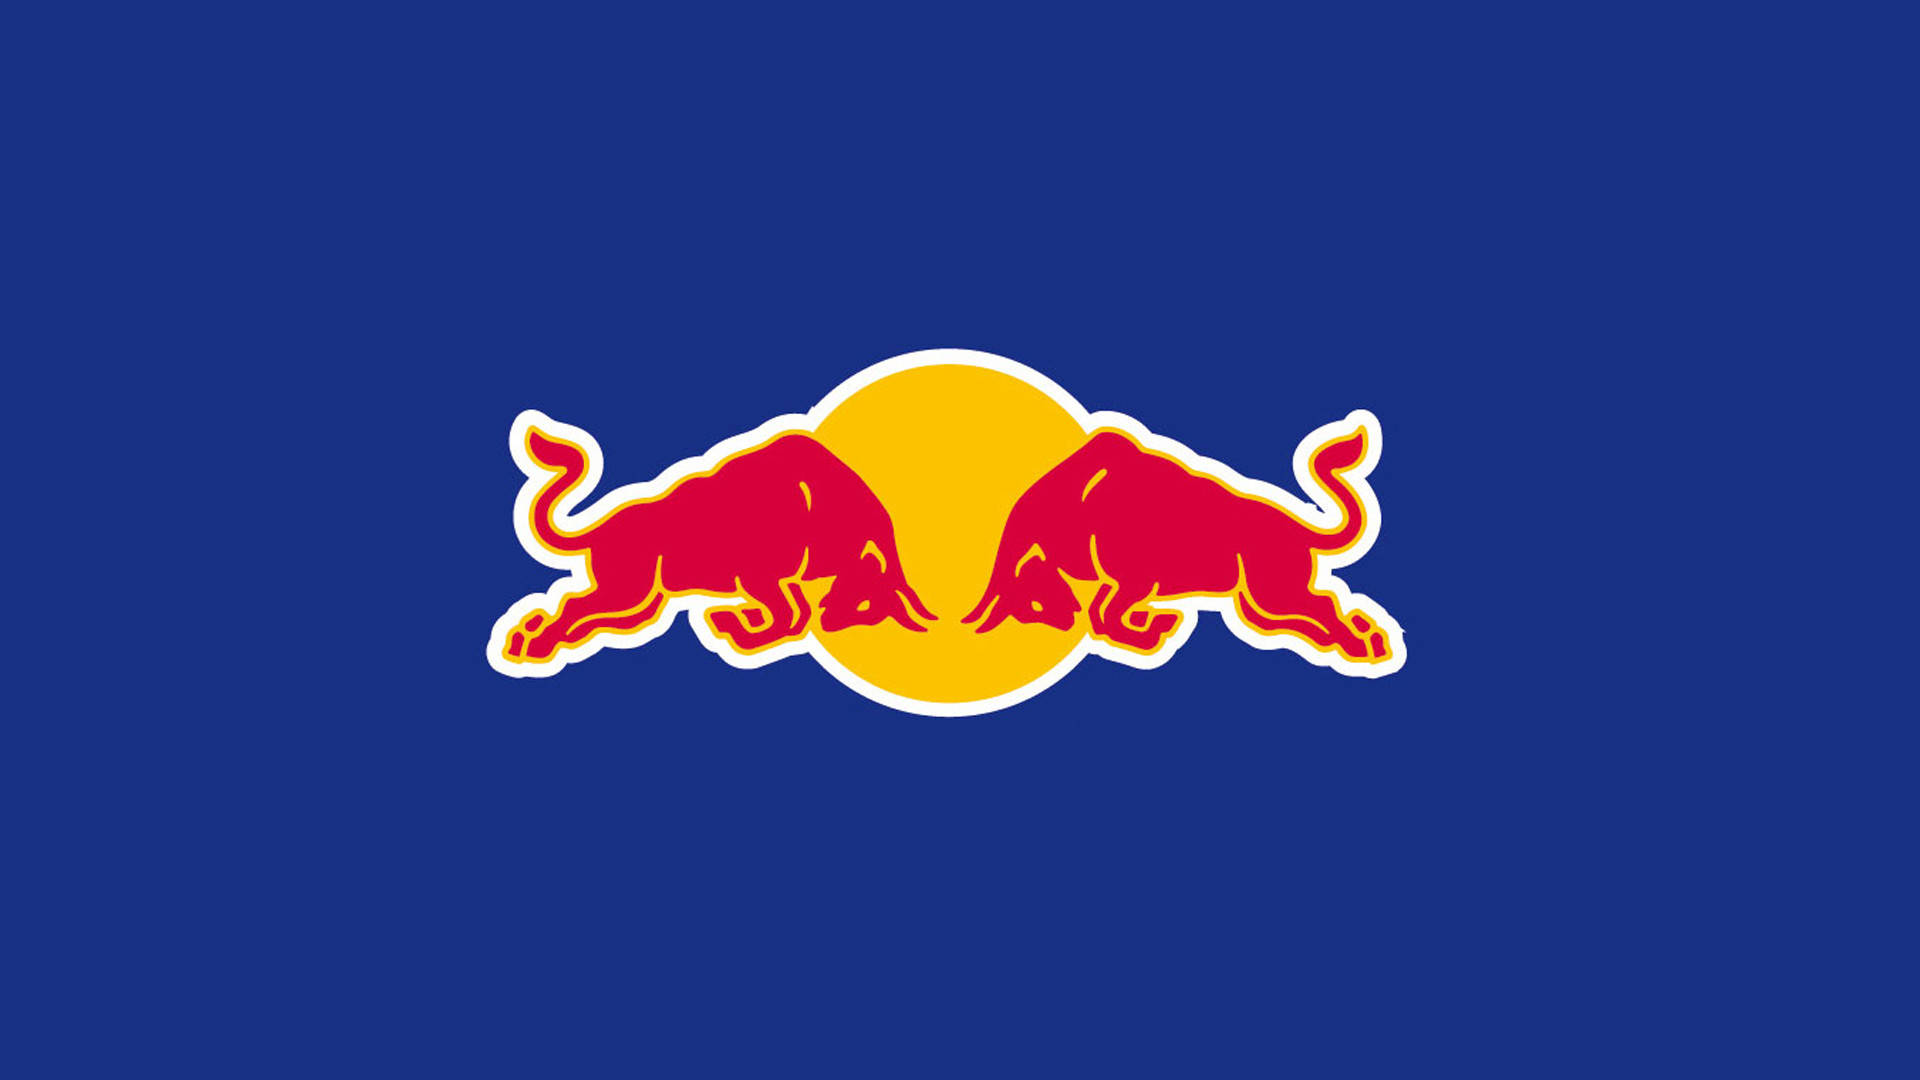 New York Red Bulls Logo Blue Background Wallpaper